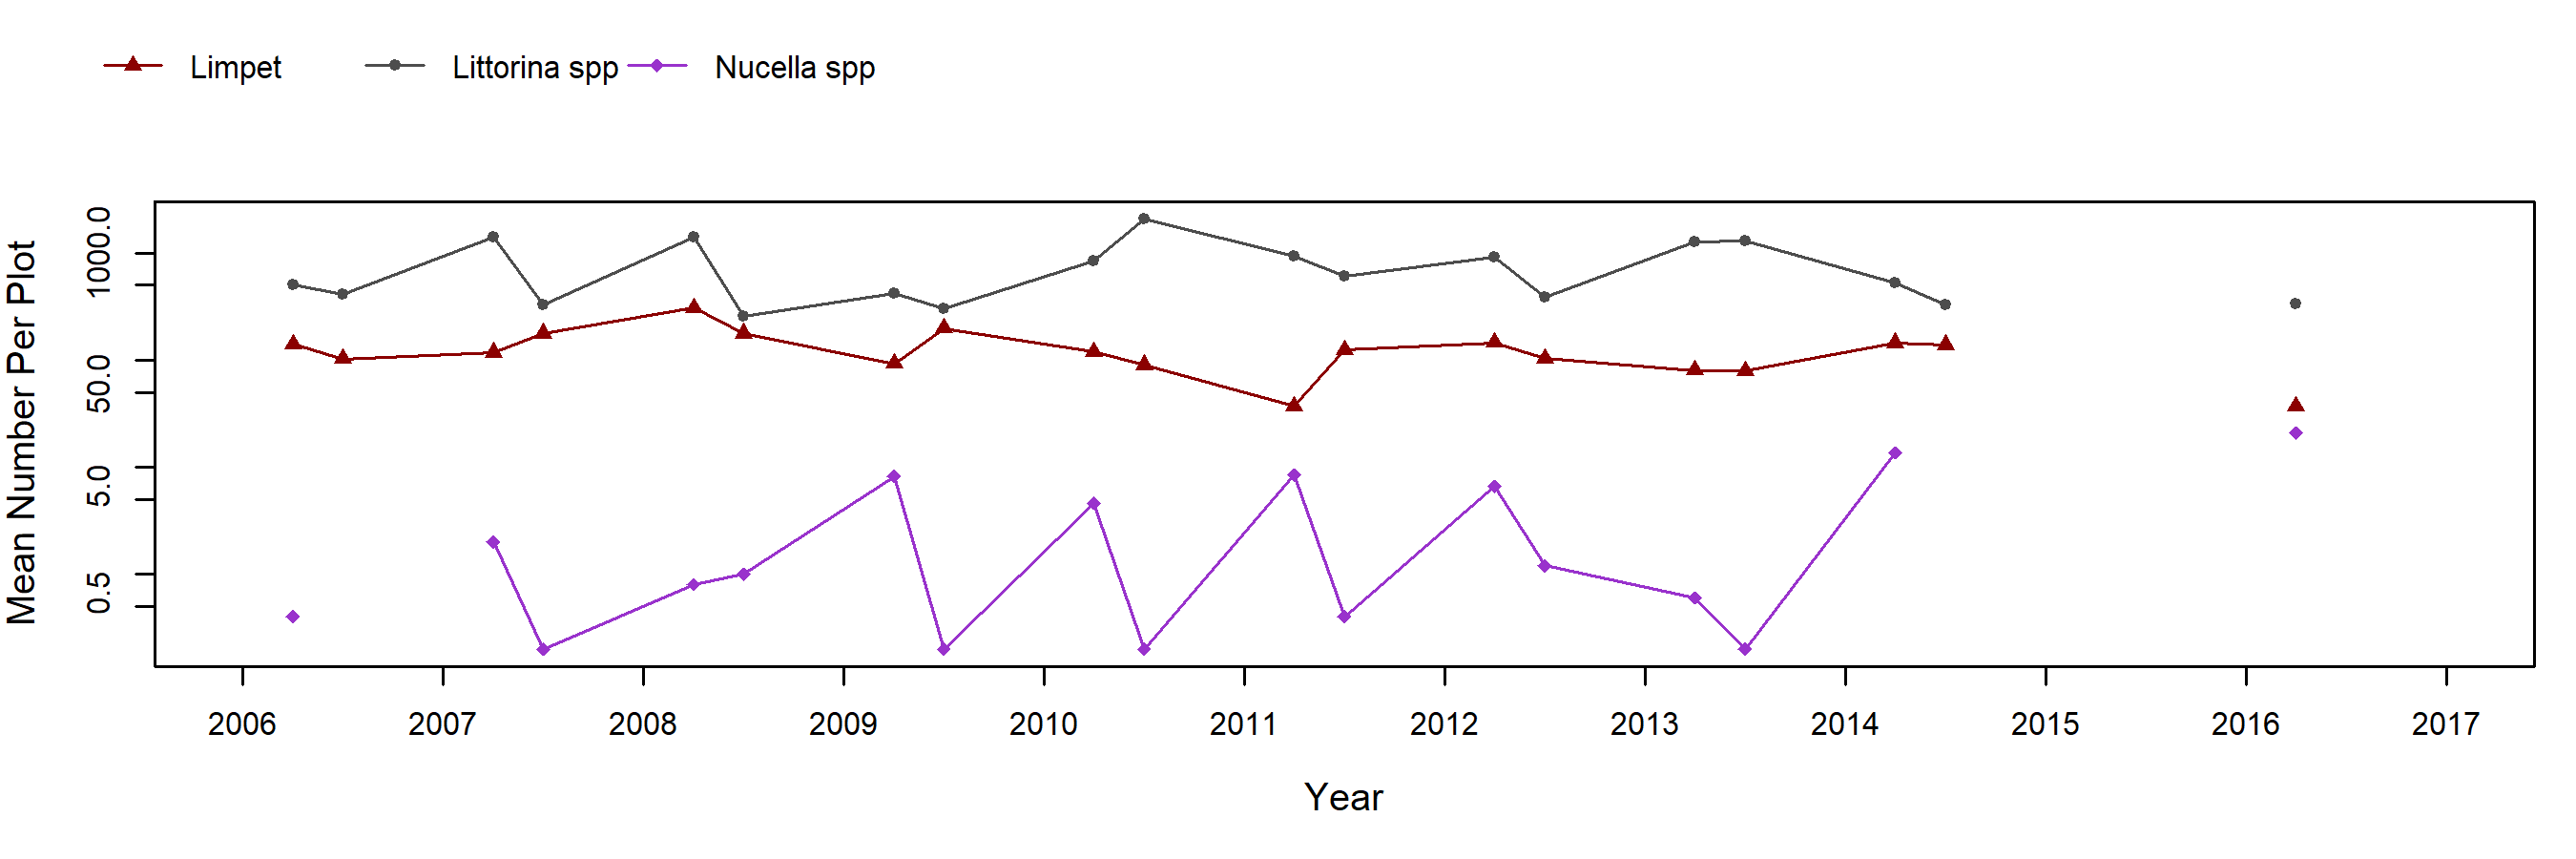 False Klamath Cove Pelvetiopsis trend plot